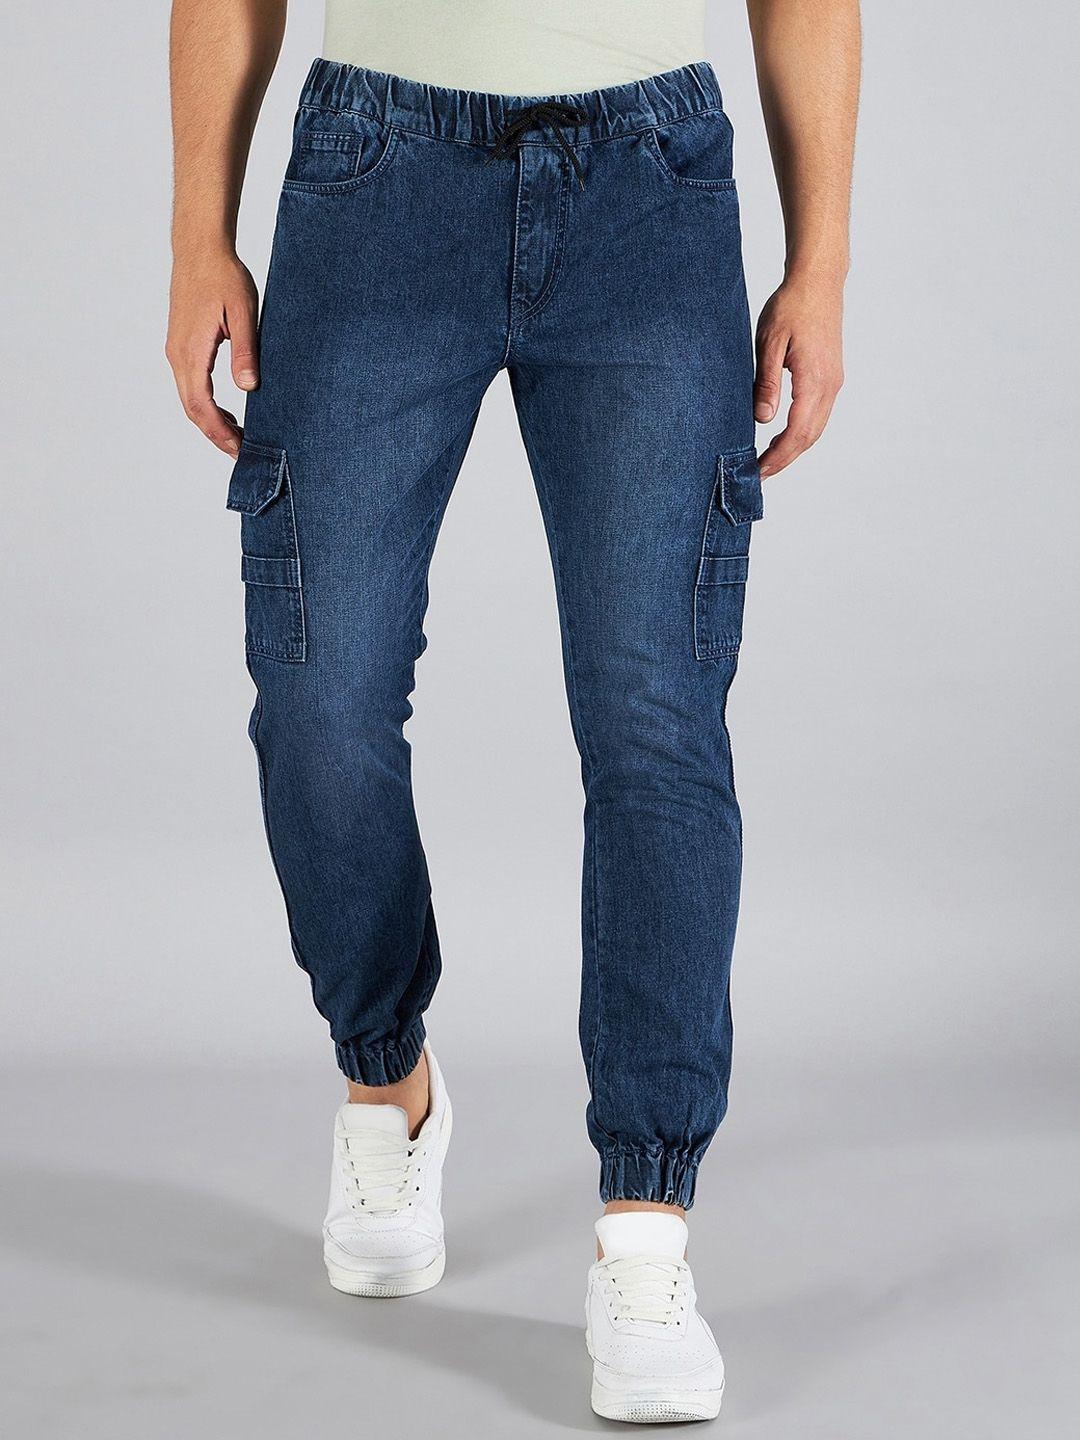 studio nexx men mid-rise clean look cotton jogger jeans